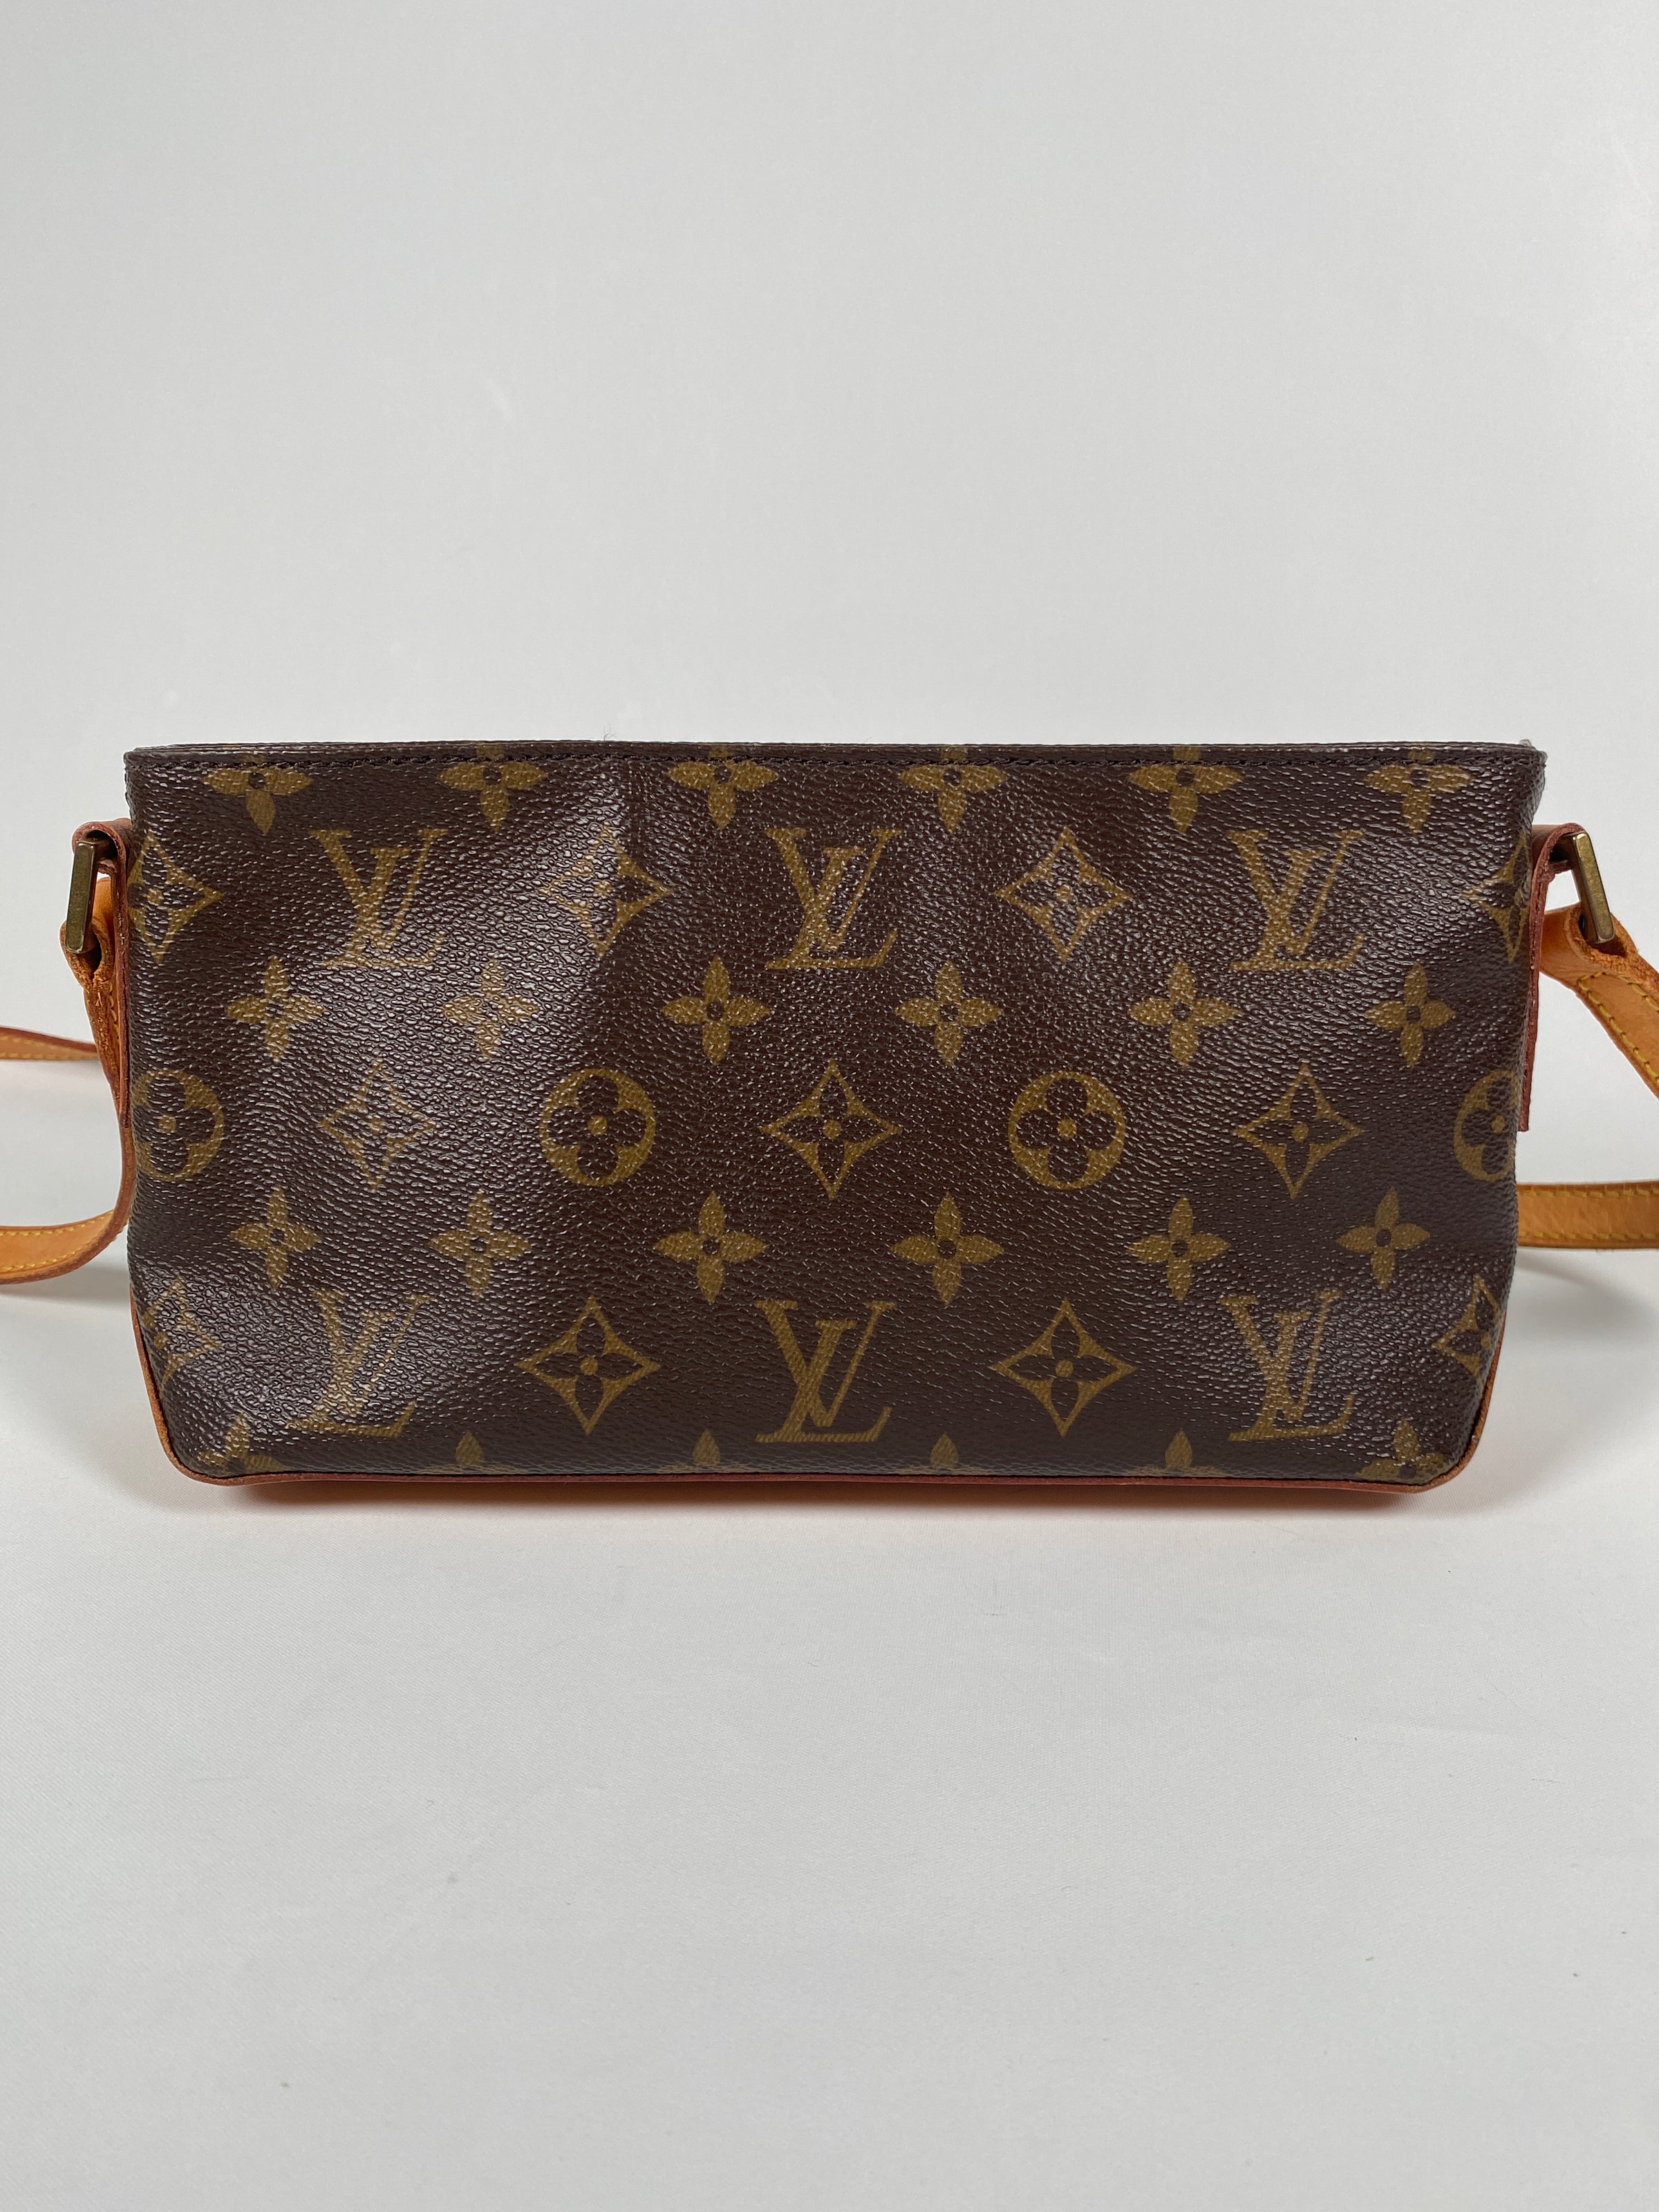 Louis Vuitton Monogram Trotteur Crossbody Bag 823lv29